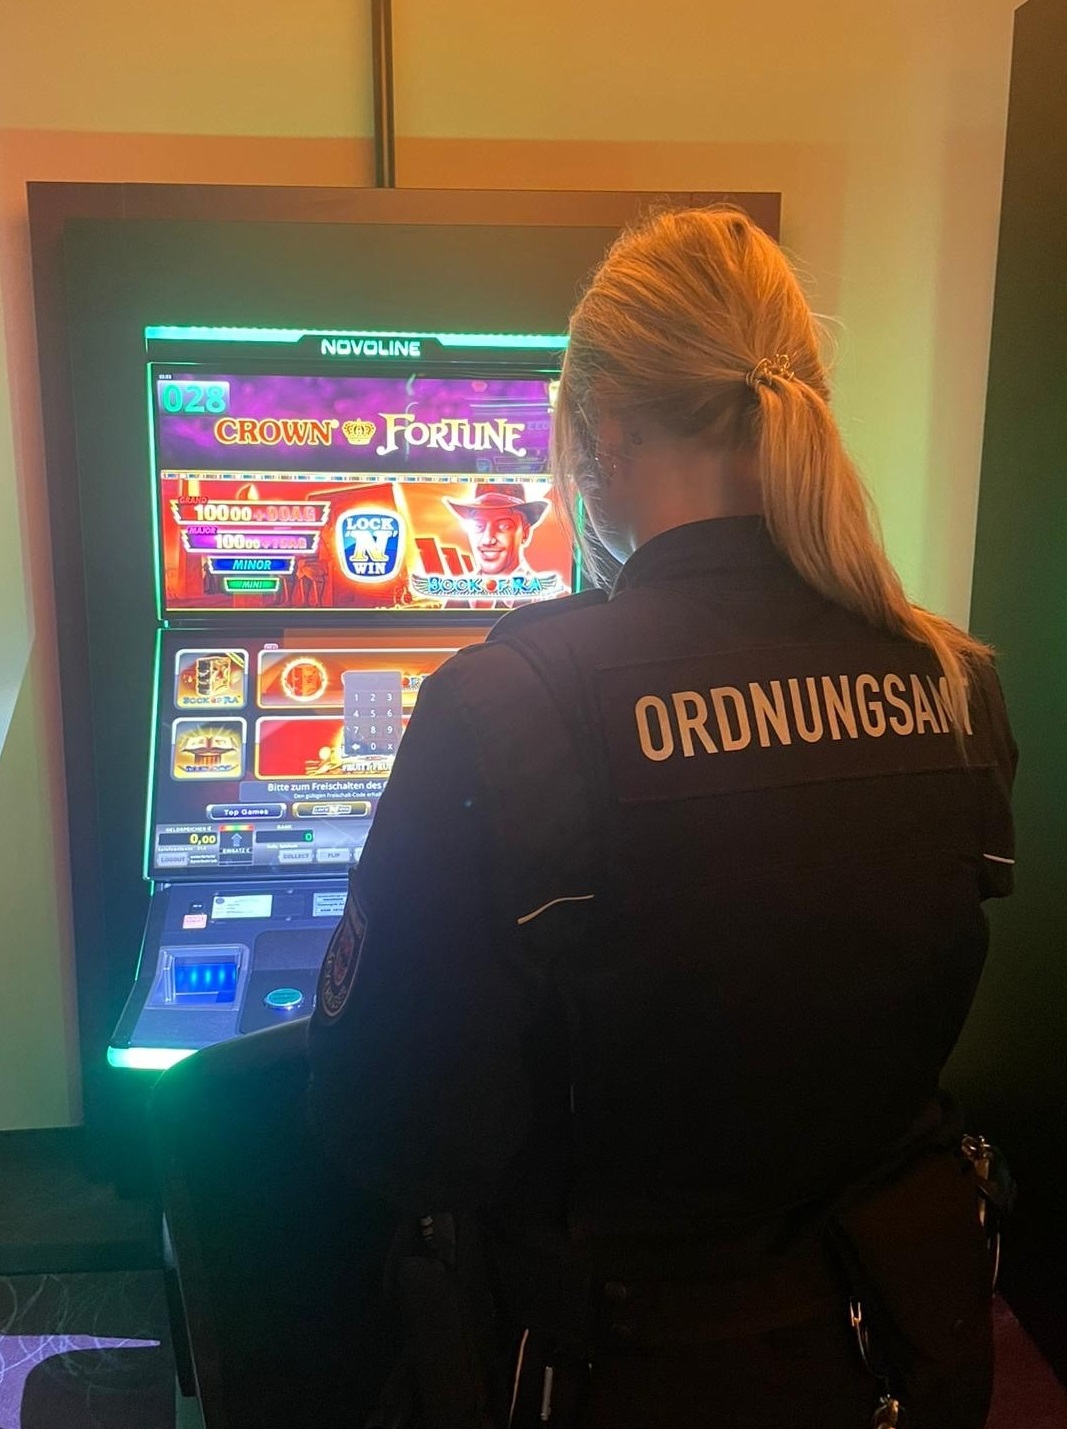 Kontrollaktion von Glücksspielgeräten in Leverkusen